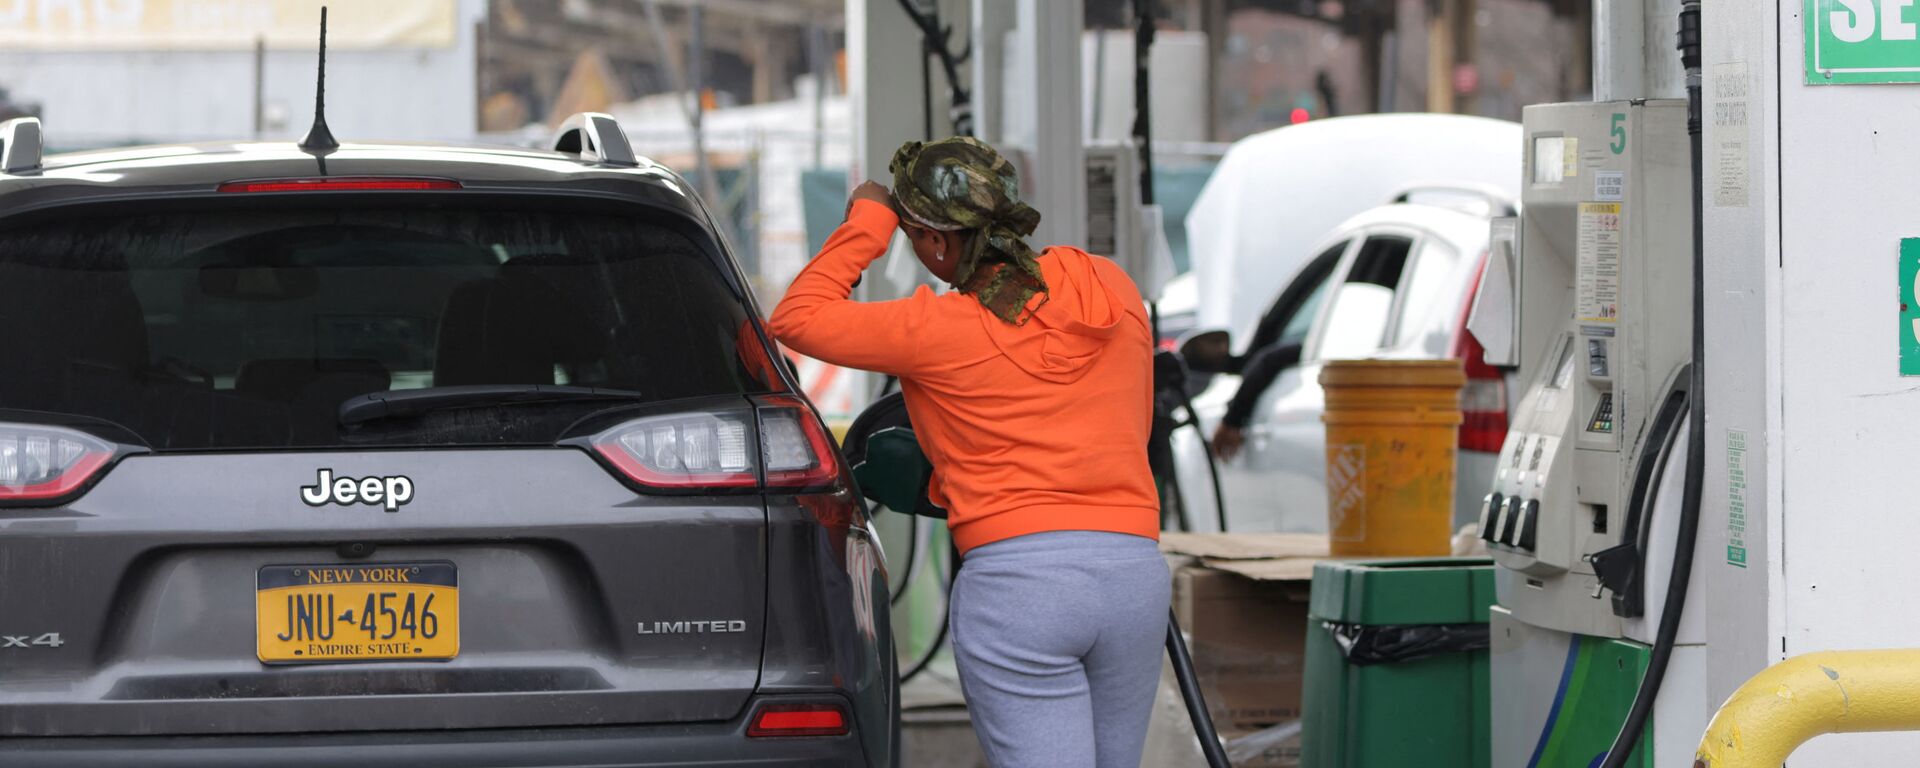 Một người phụ nữ đổ xăng trên ô tô tại một trạm xăng ở Manhattan, New York - Sputnik Việt Nam, 1920, 30.03.2022